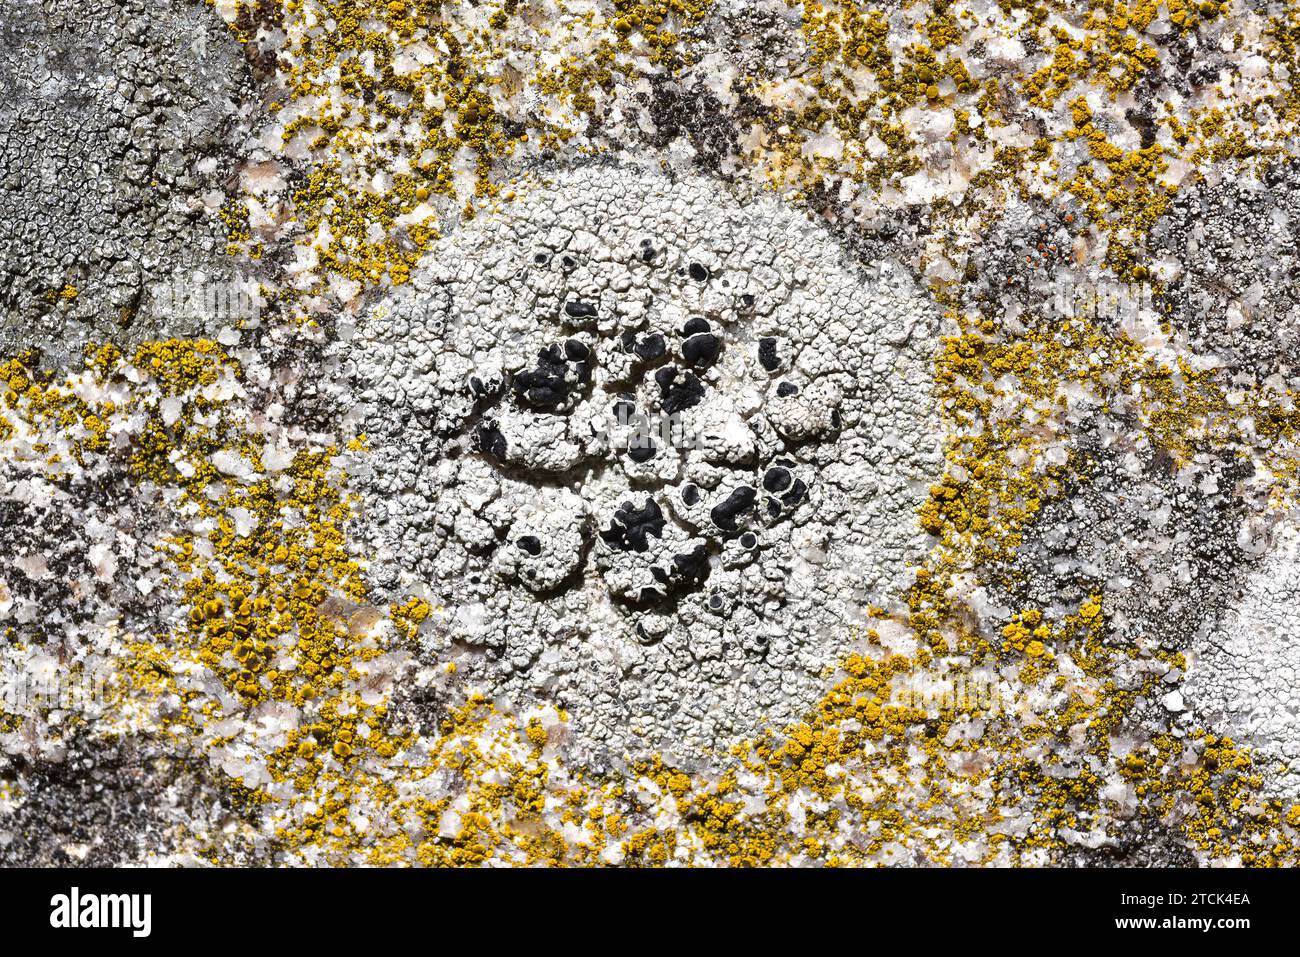 Tephromela atra or Lecanora atra is a crustose lichen with black apothecia; around it Candelariella vitellina (yellow lichen). This photo was taken in Stock Photo